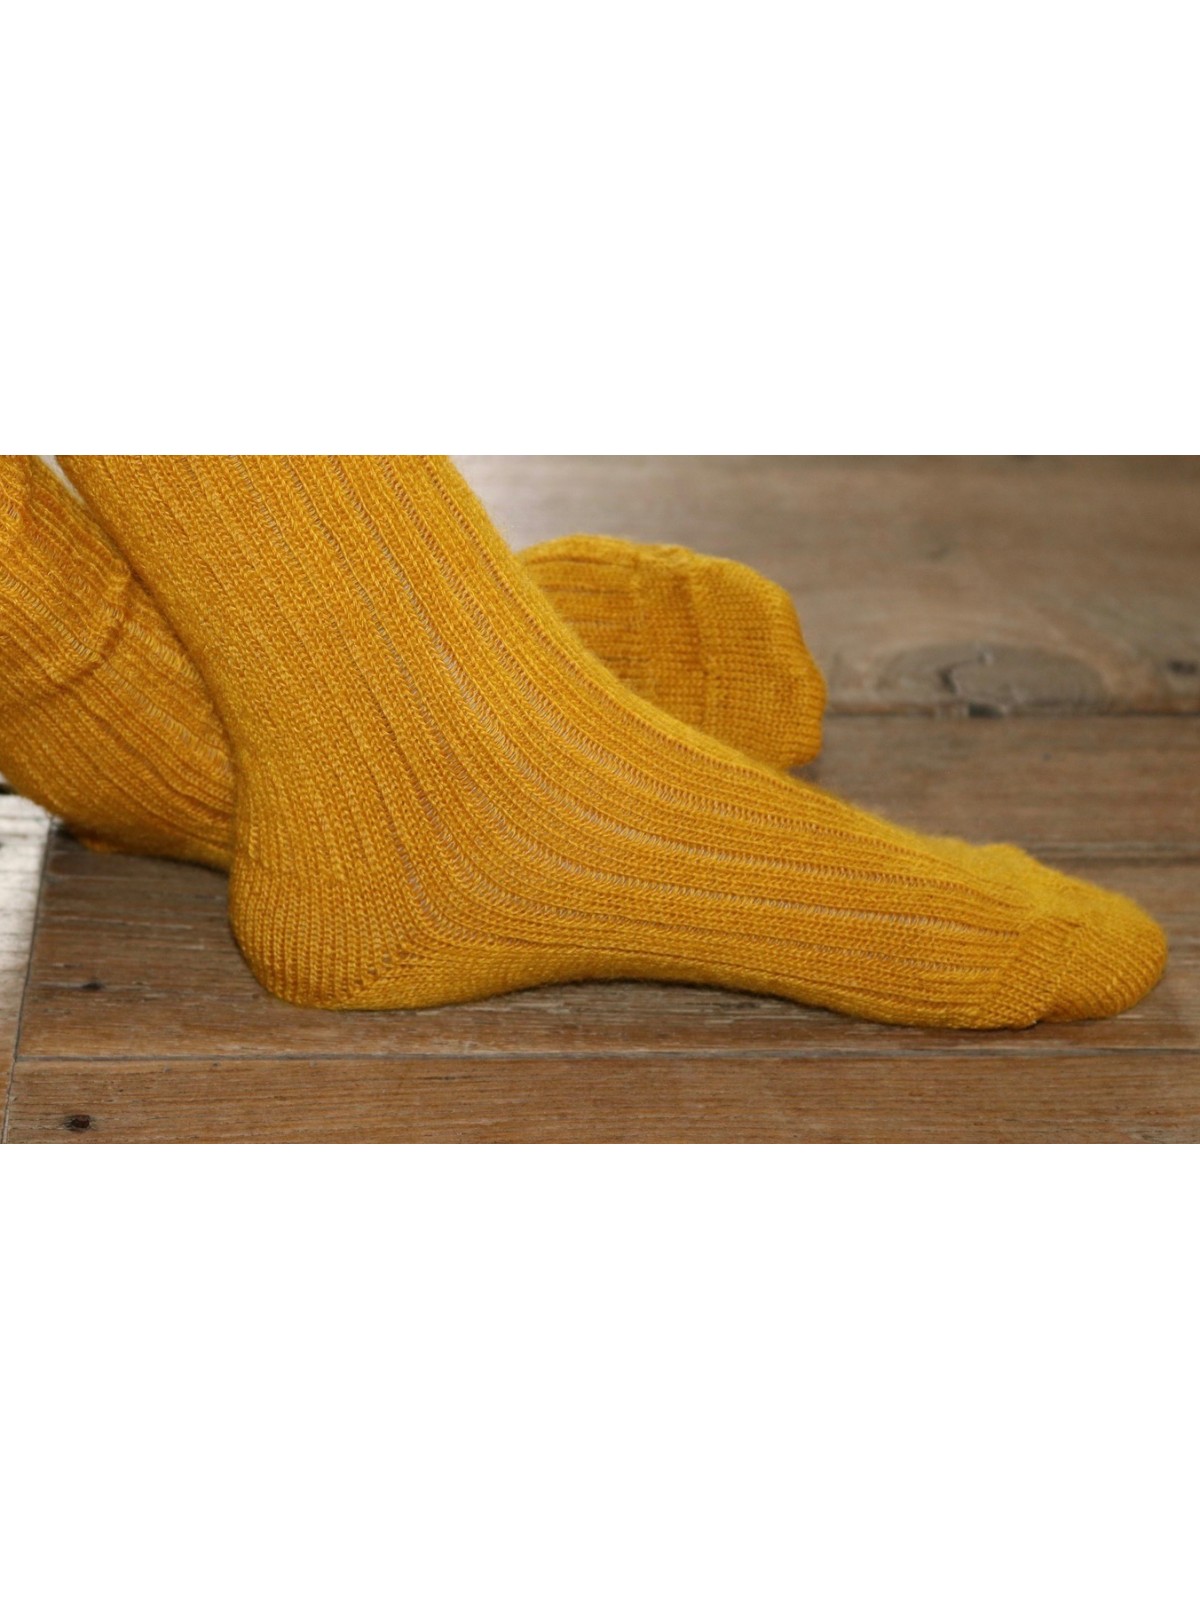 chaussettes rando longues en laine des Pyrénées